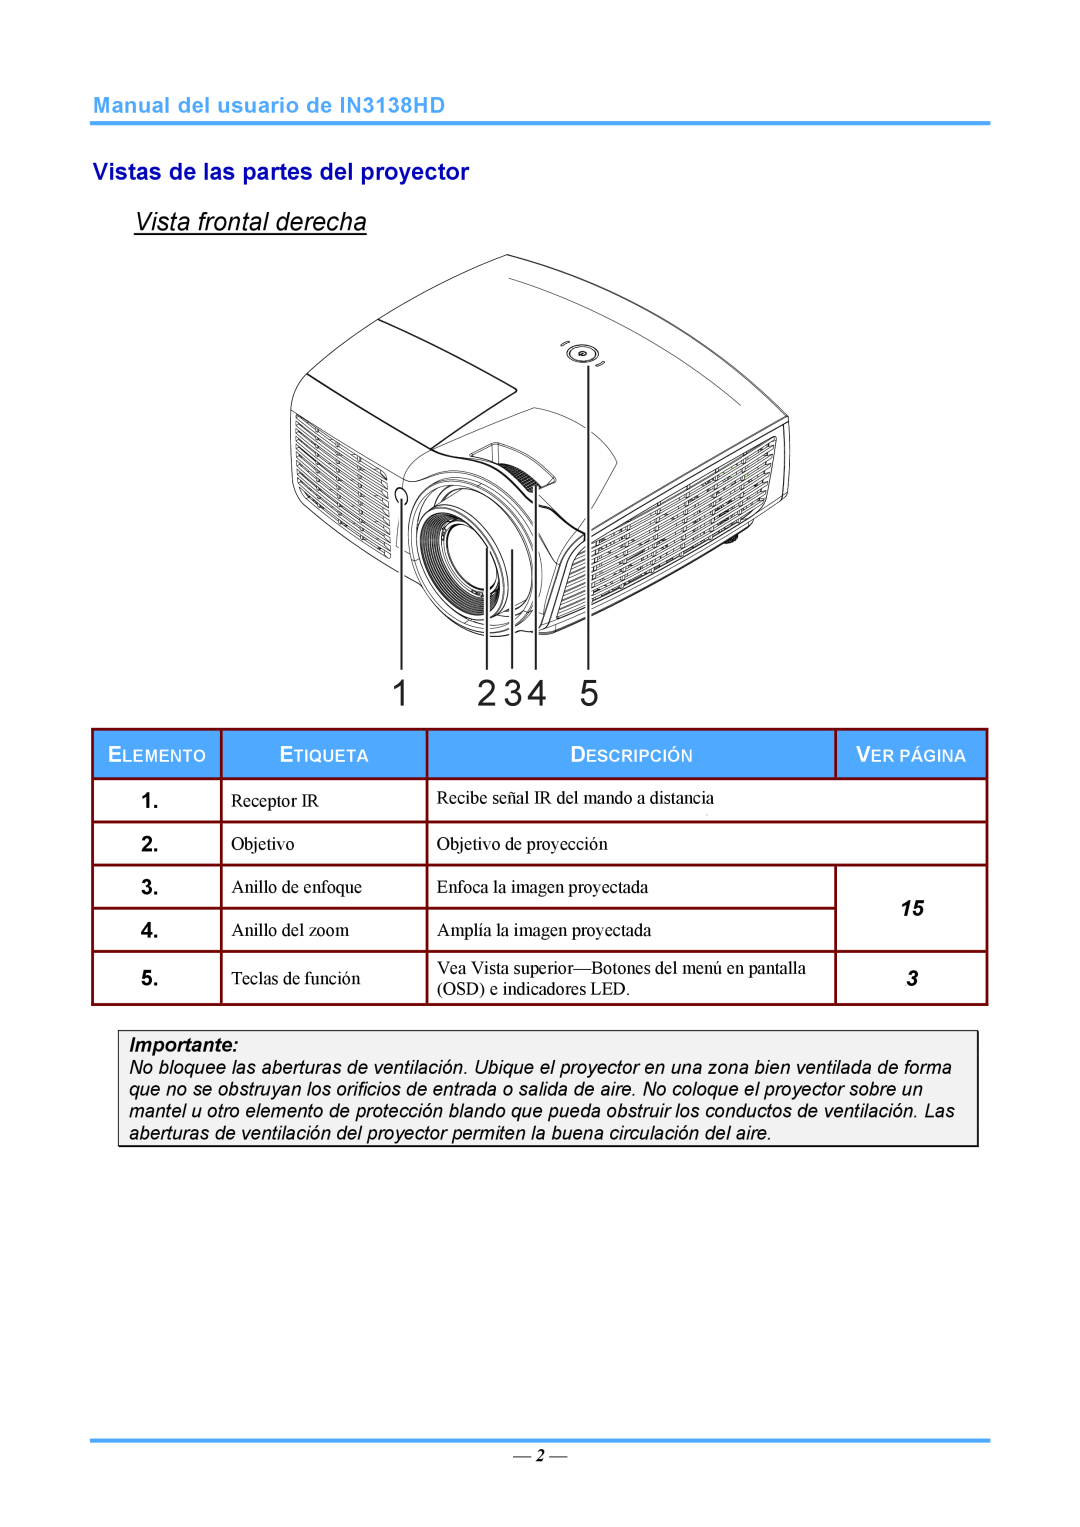 InFocus 3534324301 Vista frontal derecha, Vistas de las partes del proyector, Manual del usuario de IN3138HD, Importante 